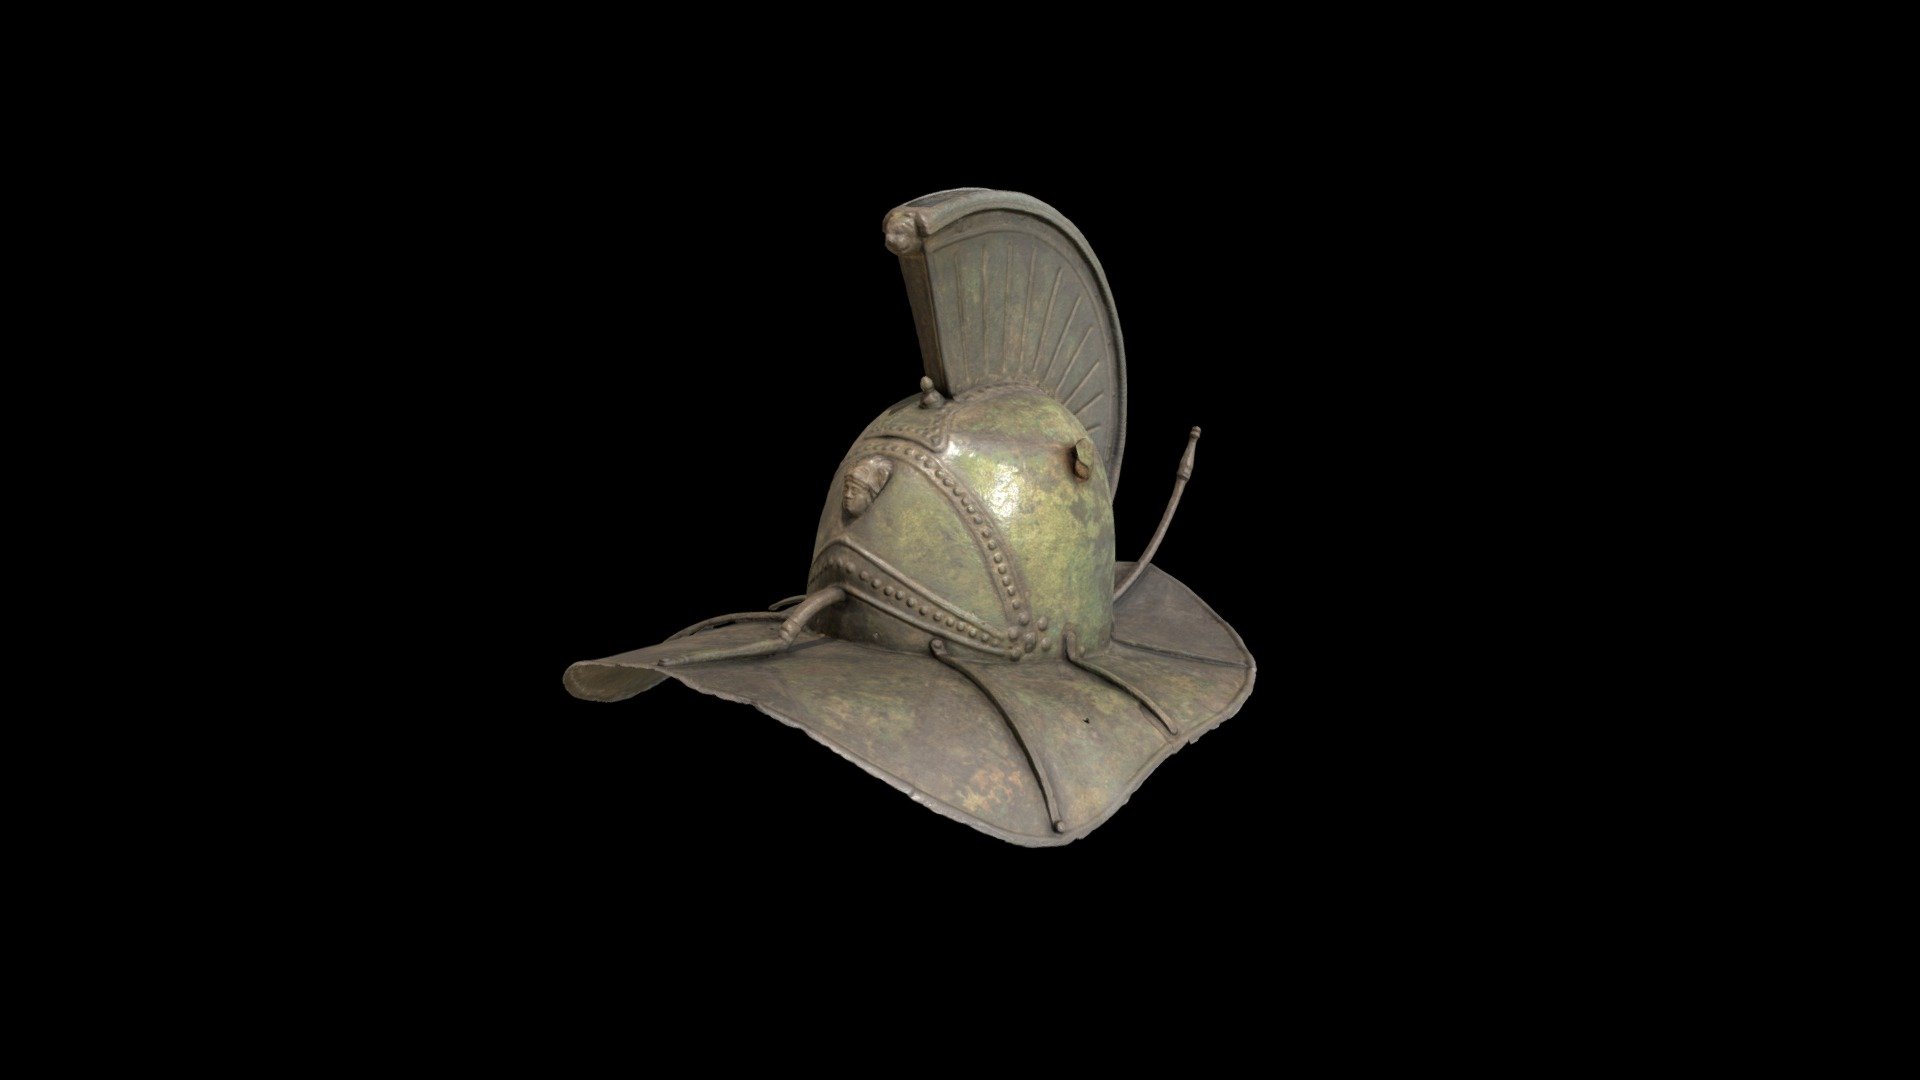 Gladiator Helmet - 3D model by Higginsatwam 3d model